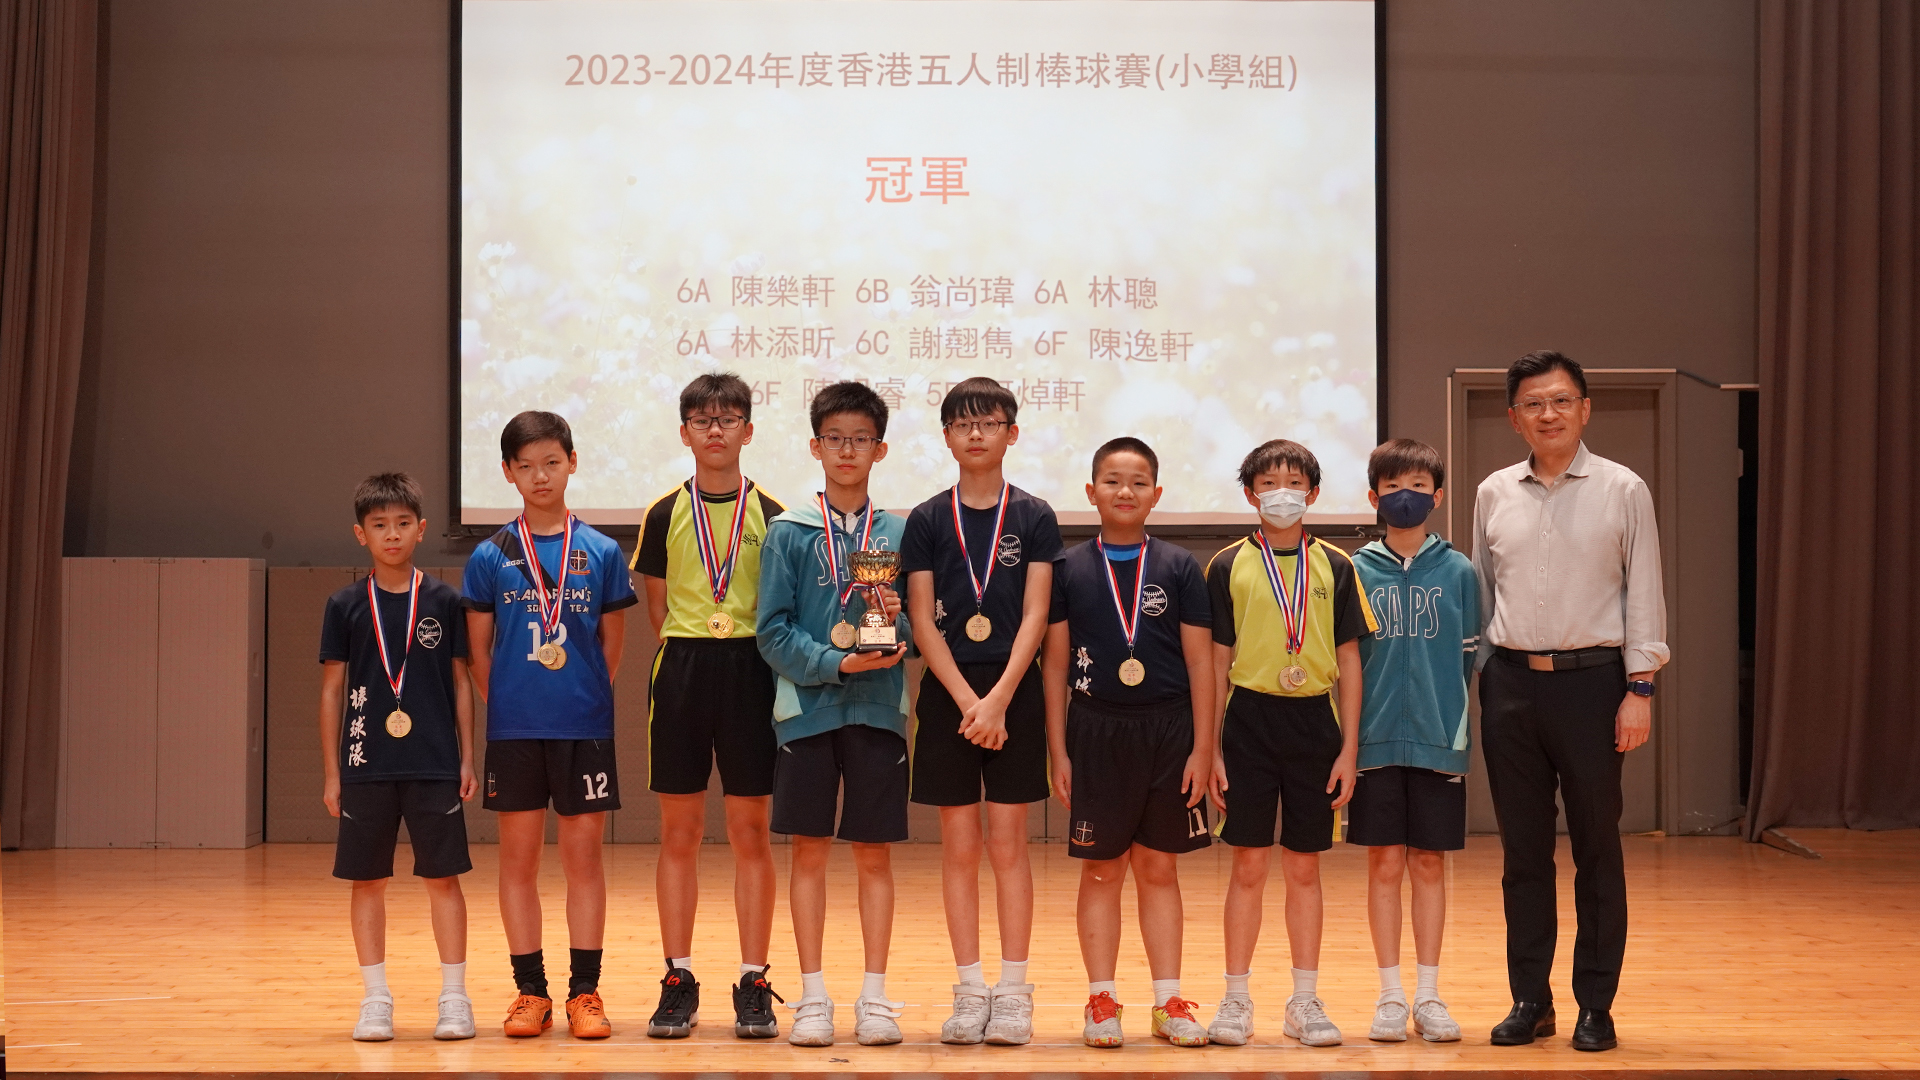 2023-2024年度香港五人制棒球賽(小學組) – 冠軍